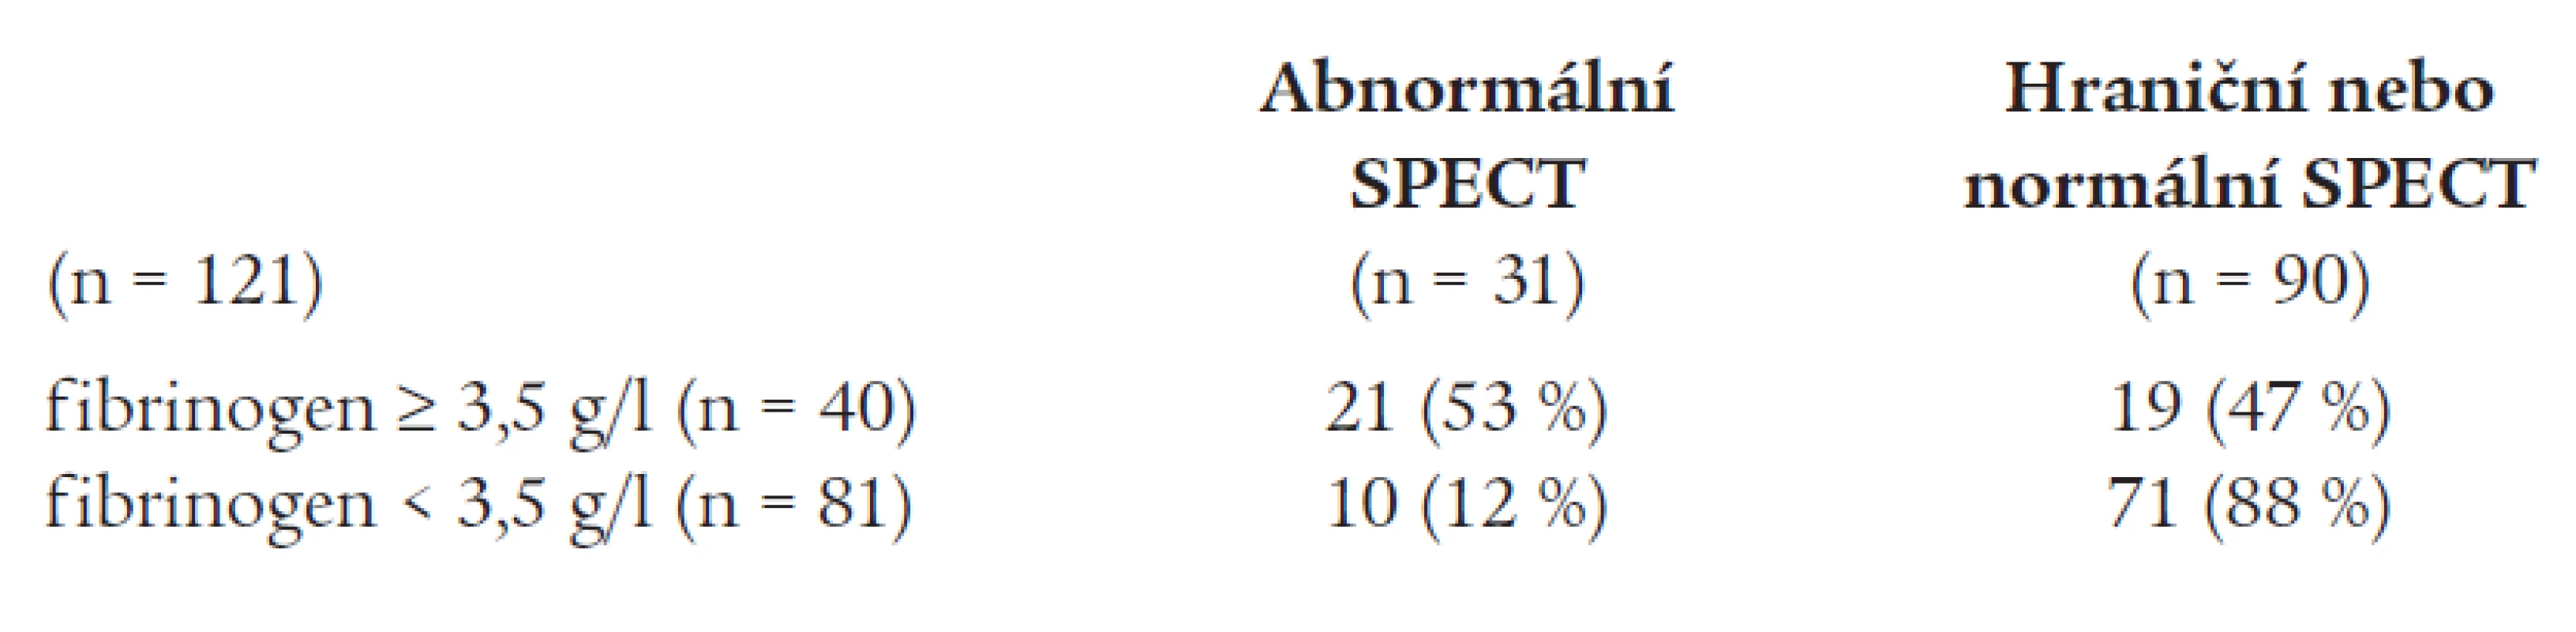 Rozdělení výsledku zátěžového SPECT myokardu podle hodnoty fibrinogenu.